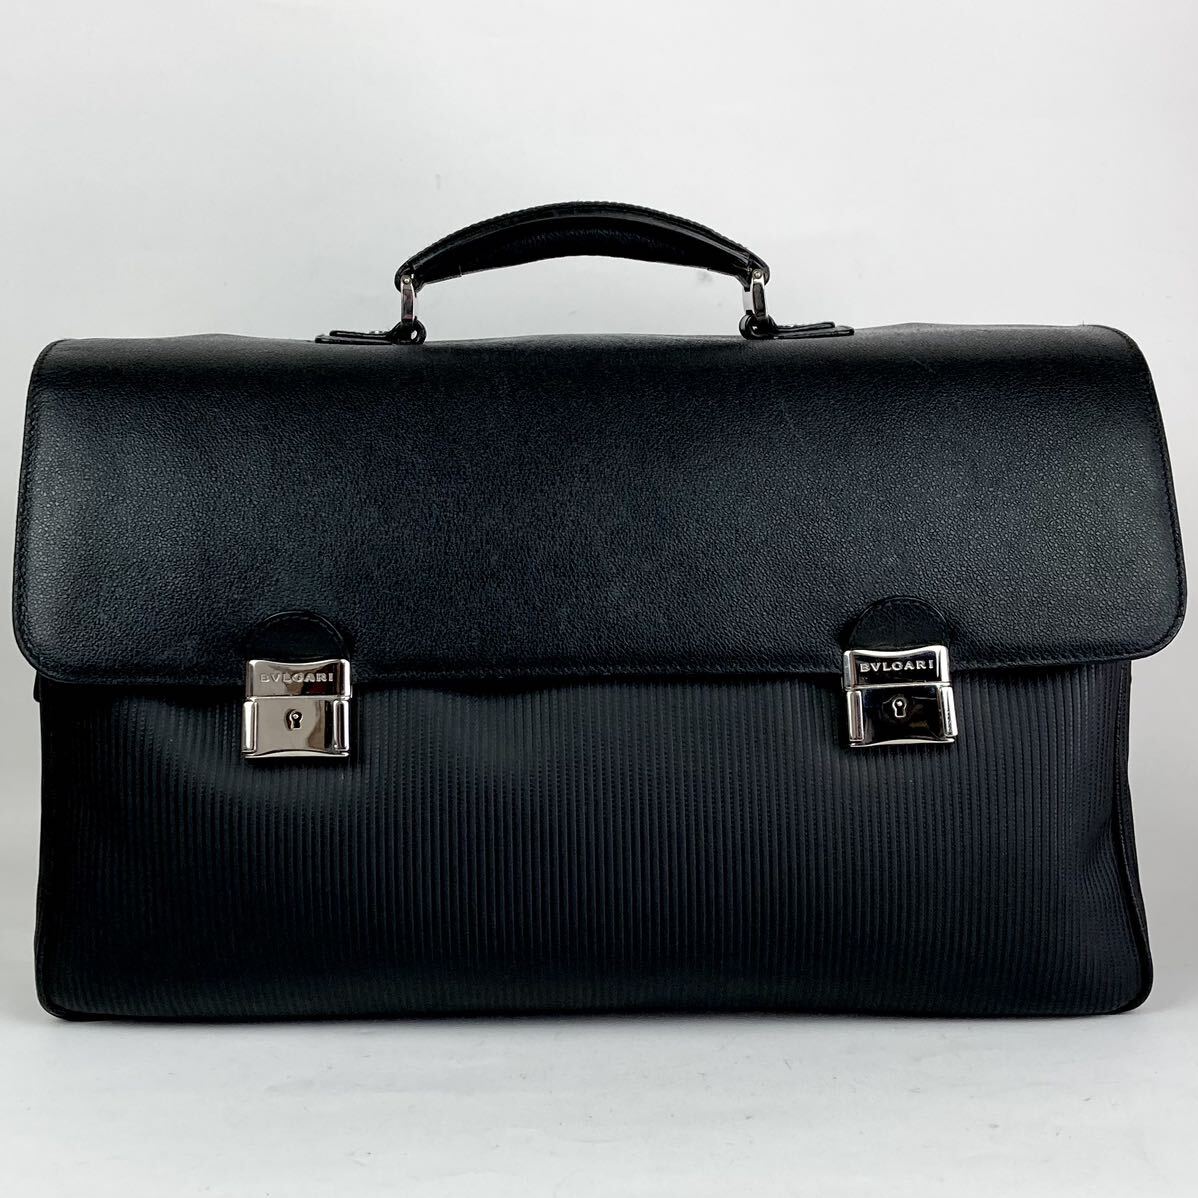 美品 BVLGARI ブルガリ ミレリゲ ビジネスバッグ ブリーフケース メンズ トート PVC レザー 革 ブラック 黒 A4収納 1円 書類 カバン 鞄の画像2